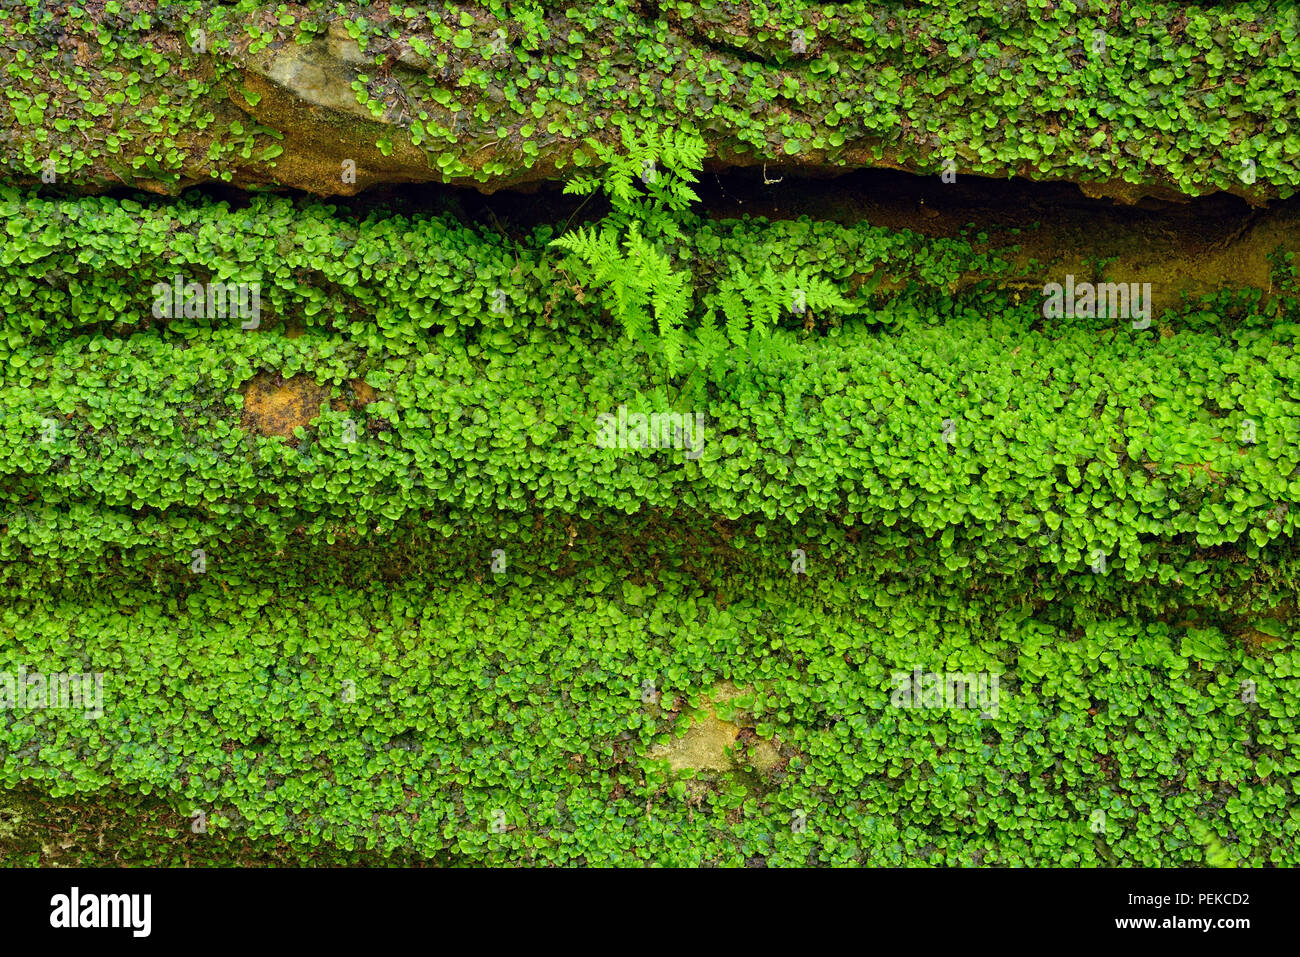 Vegetación que crece alrededor de las paredes de roca arenisca en la tenería Creek Canyon, Alger County, cerca de Munising, Michigan, EE.UU. Foto de stock